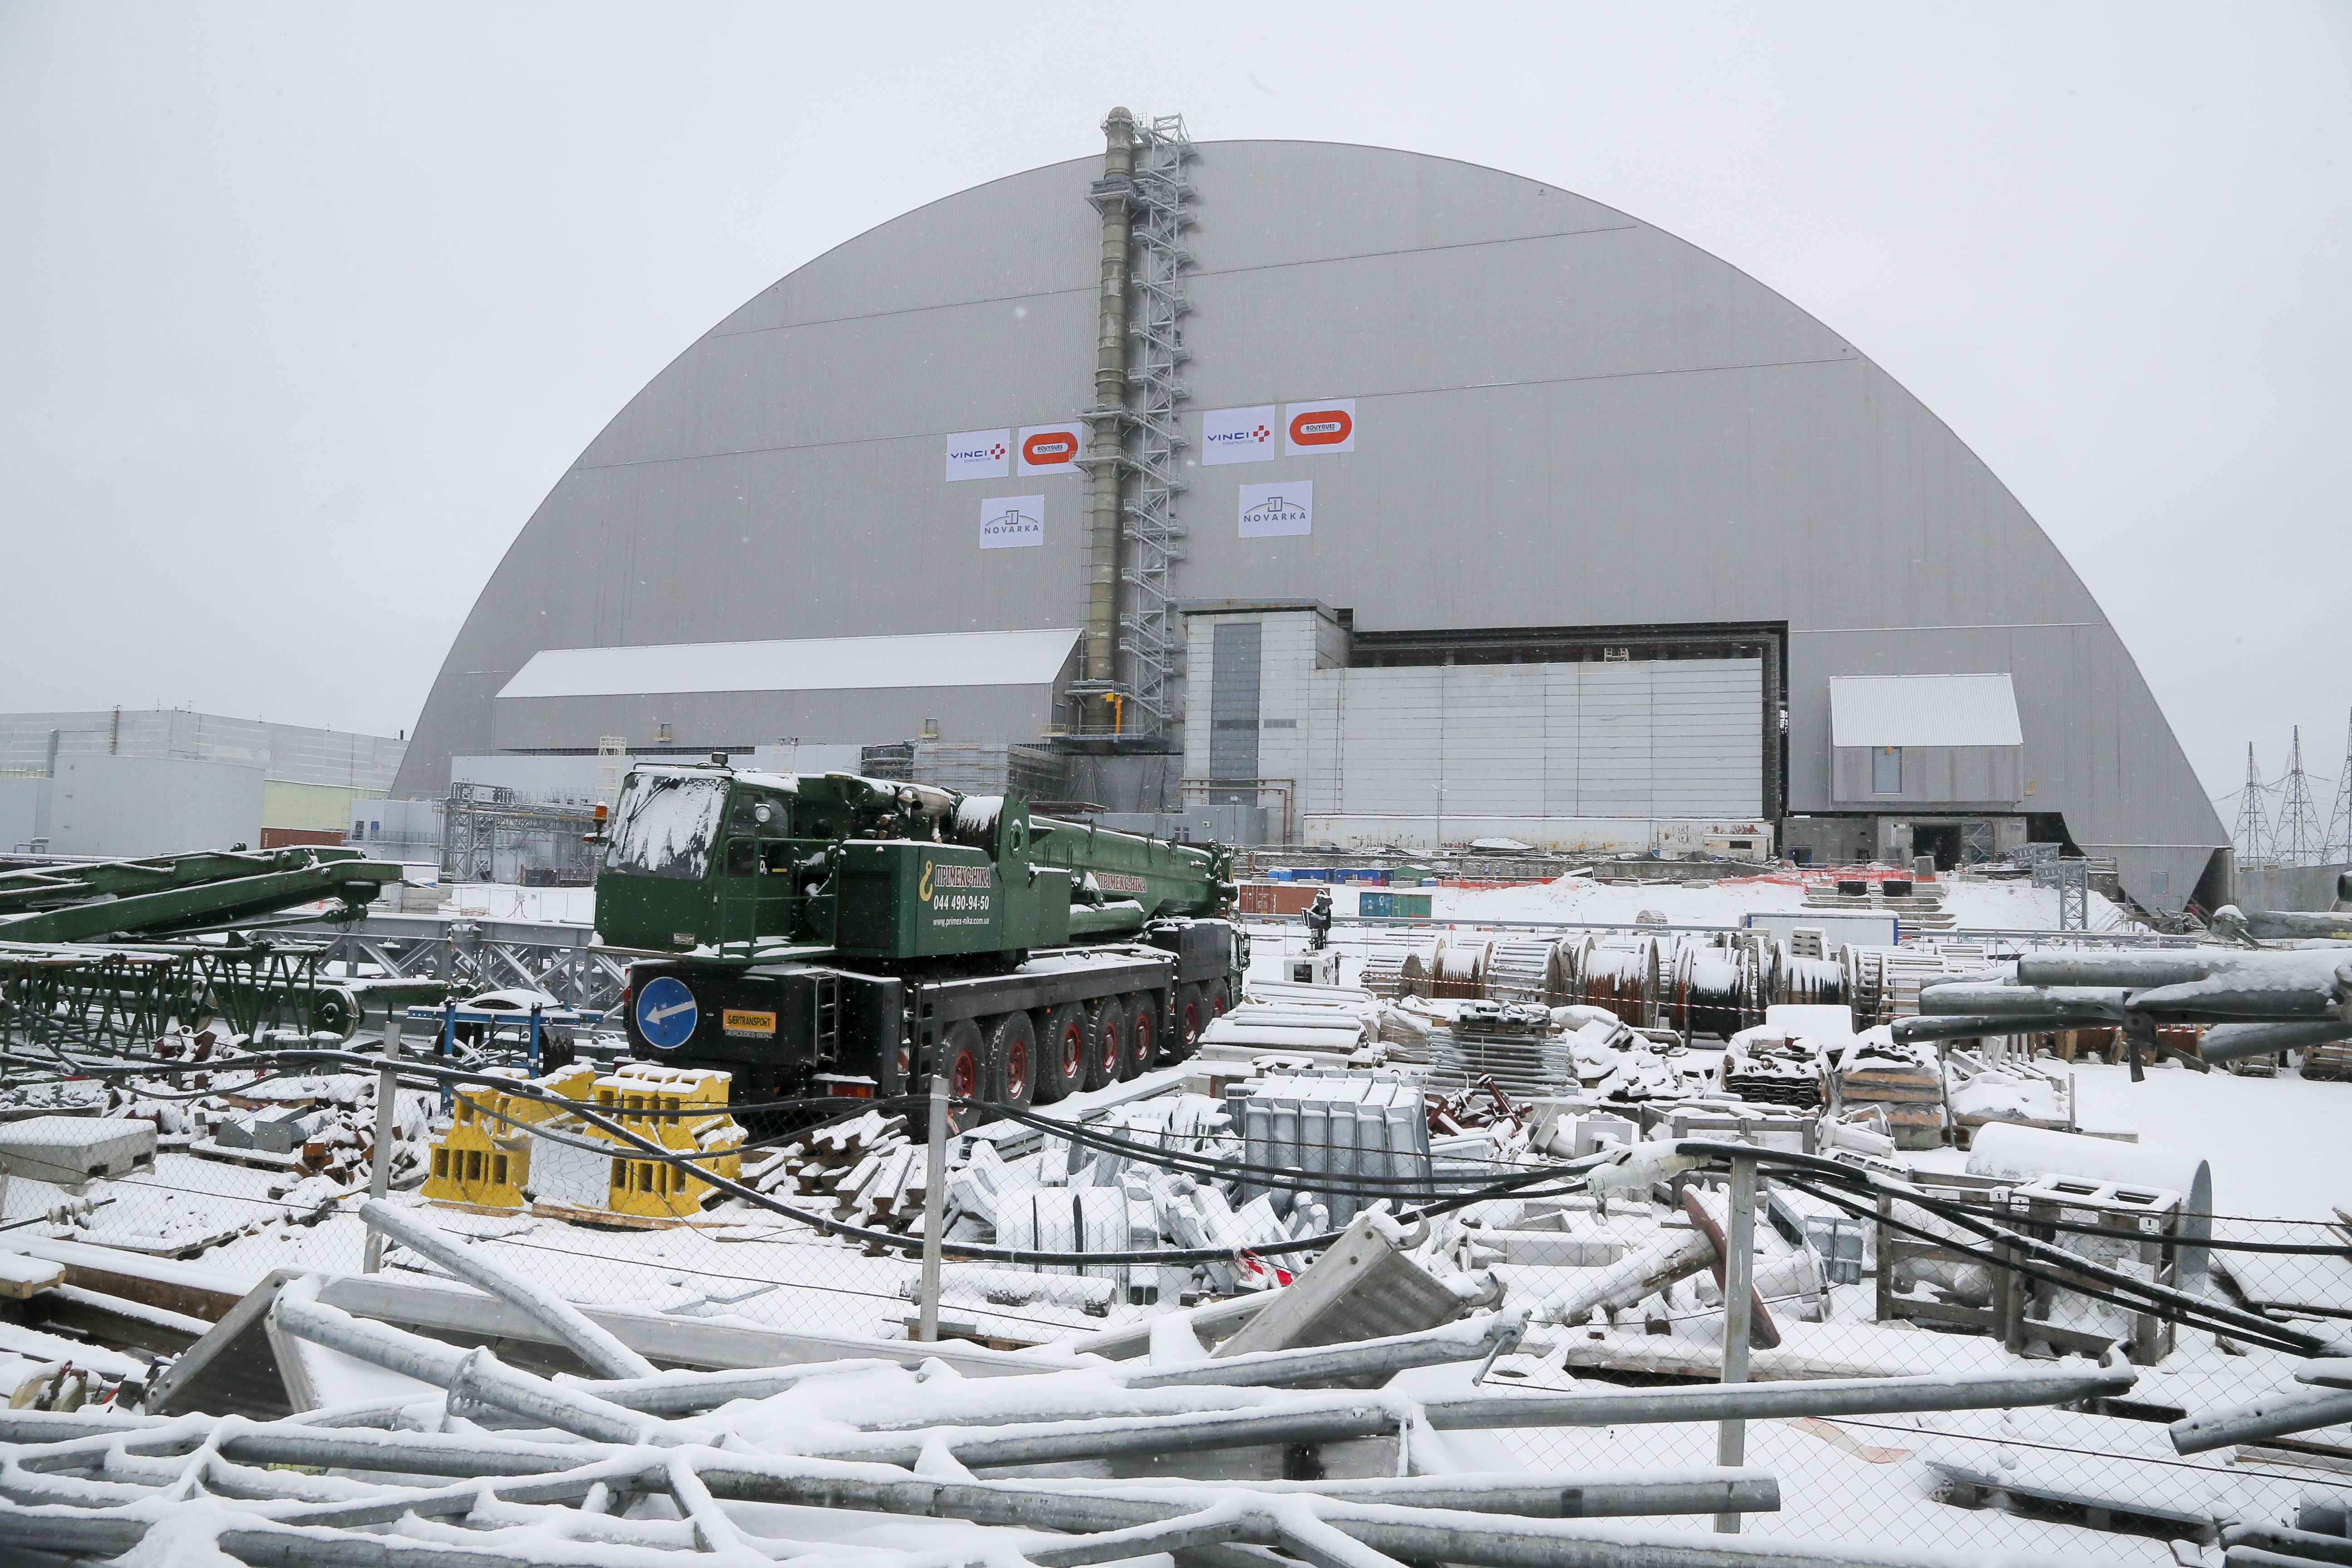 Ucraina a inaugurat domul de otel pus peste reactorul de la Cernobil. Constructia a durat 7 ani si a costat 1.5 mild. de euro